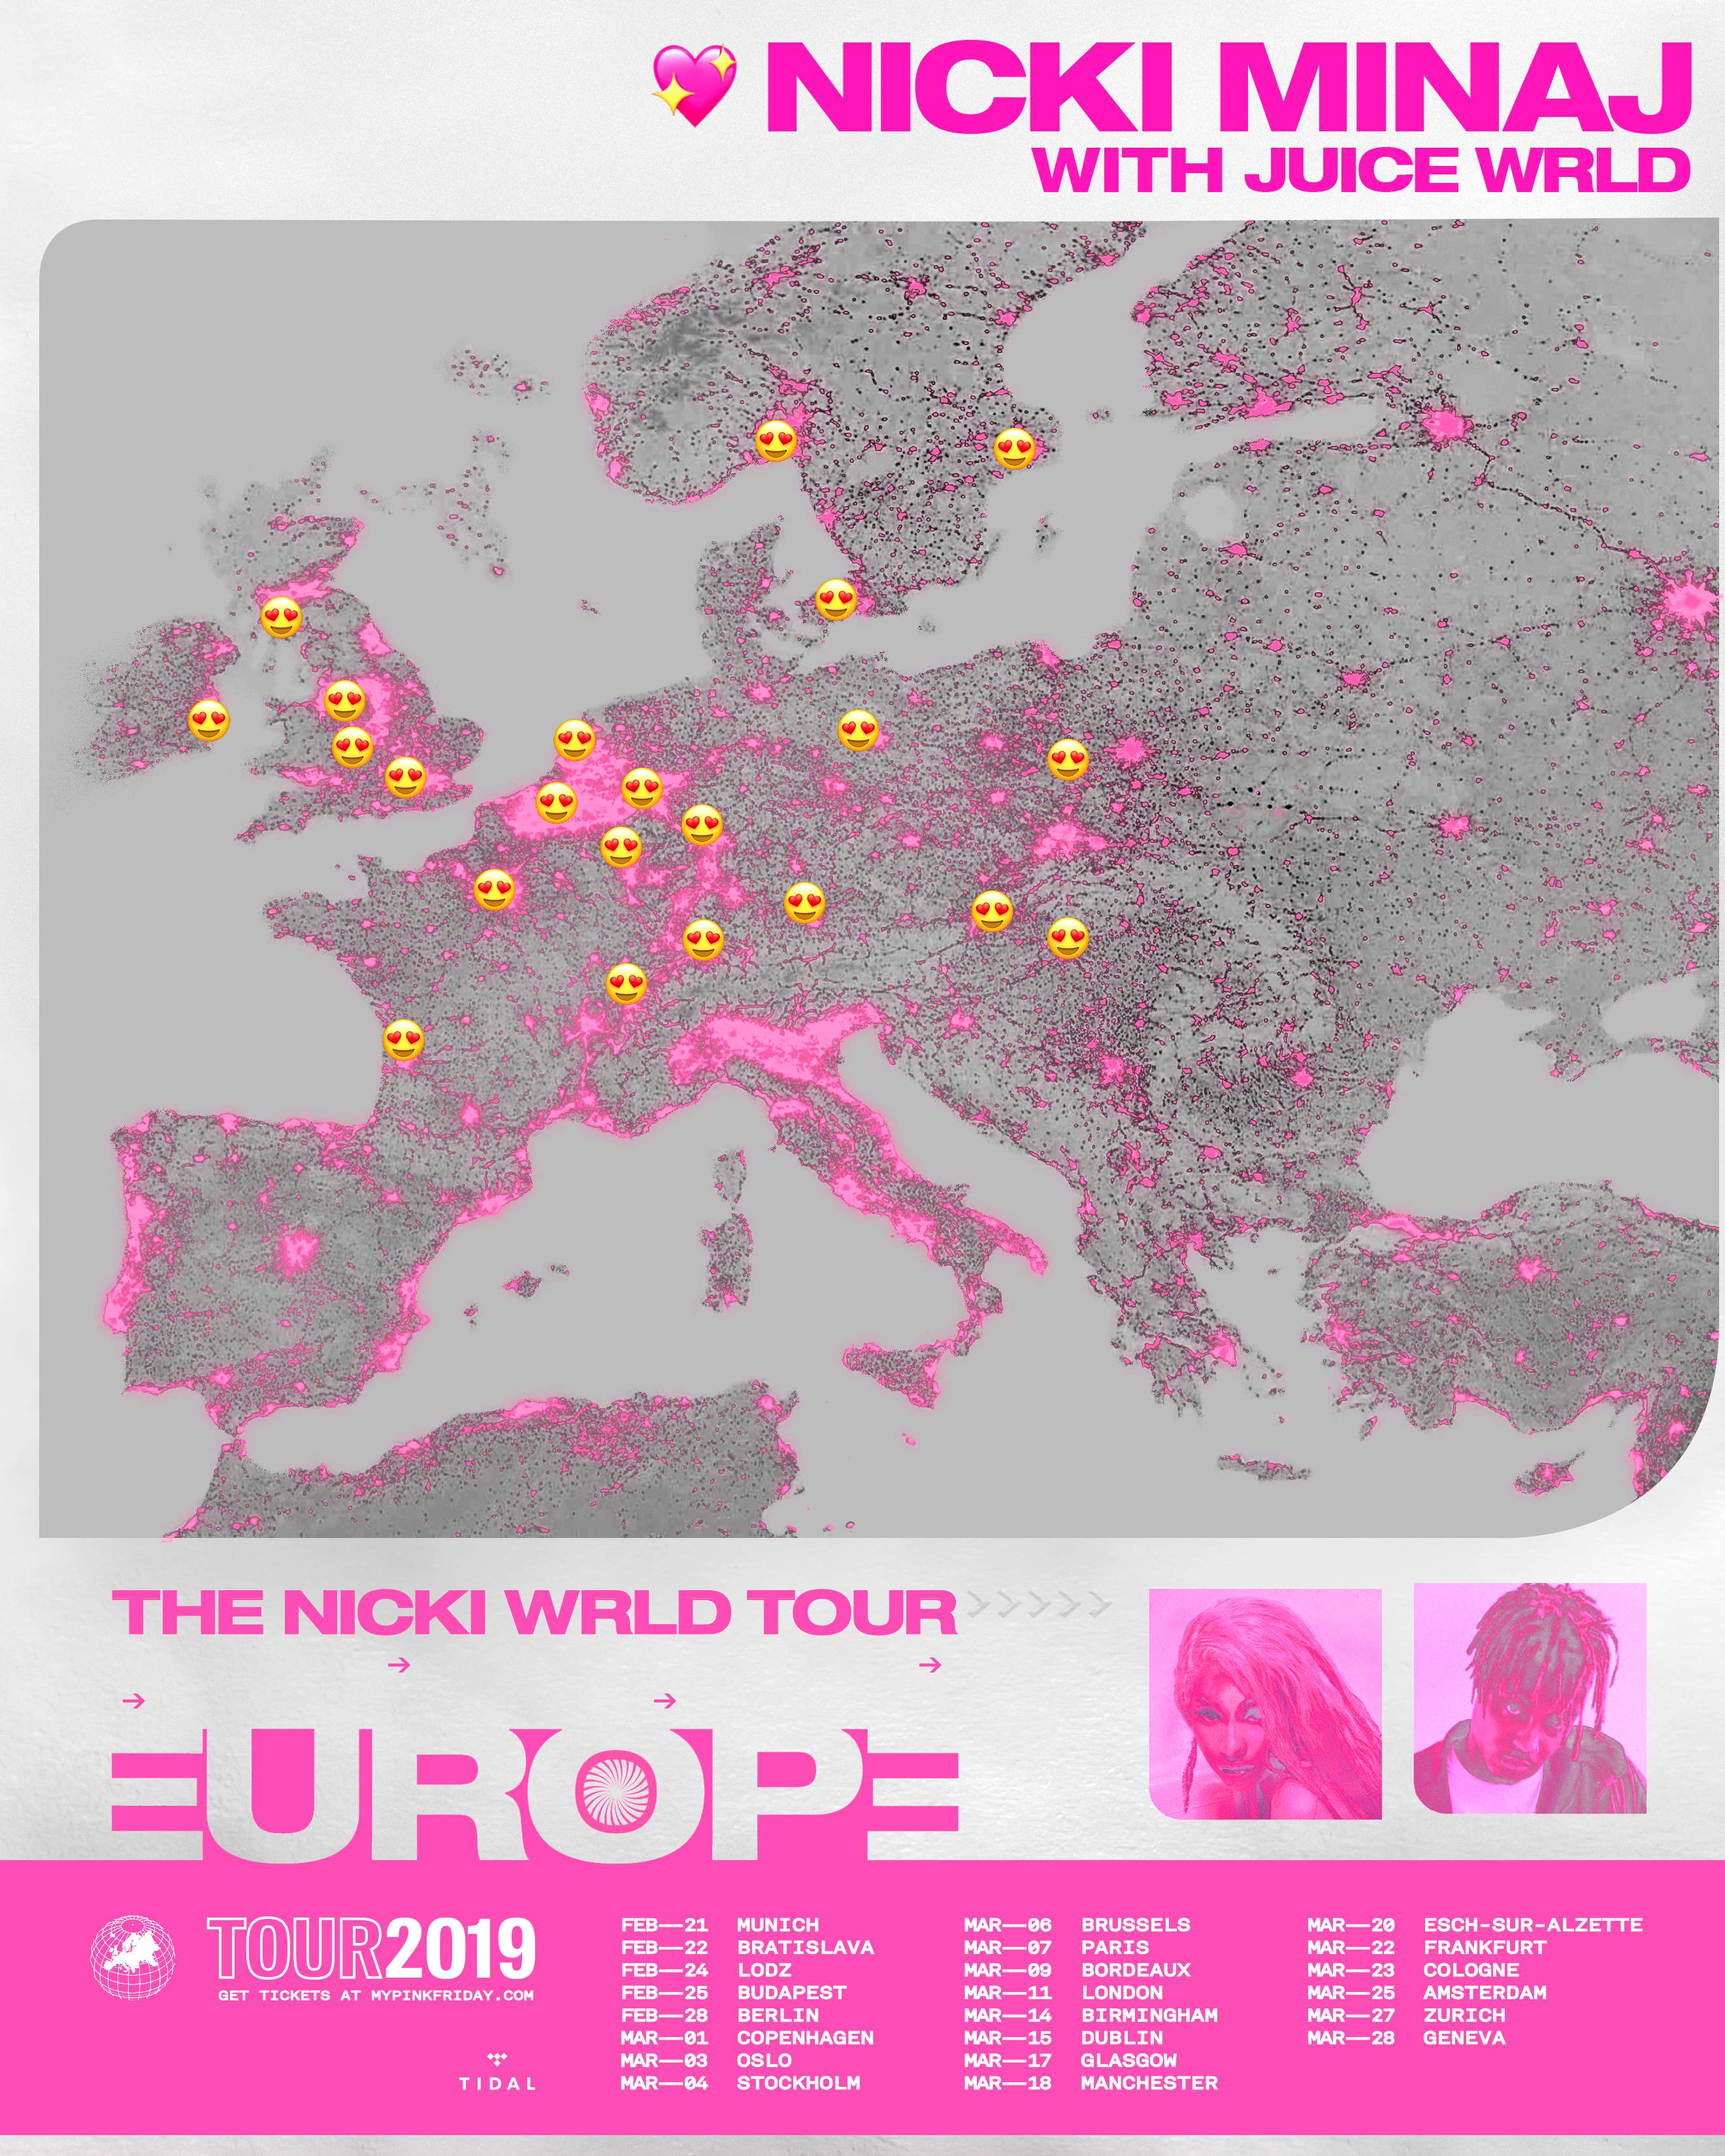 Nicki Minaj Announces Juice WRLD to Replace Future on European Tour Dates